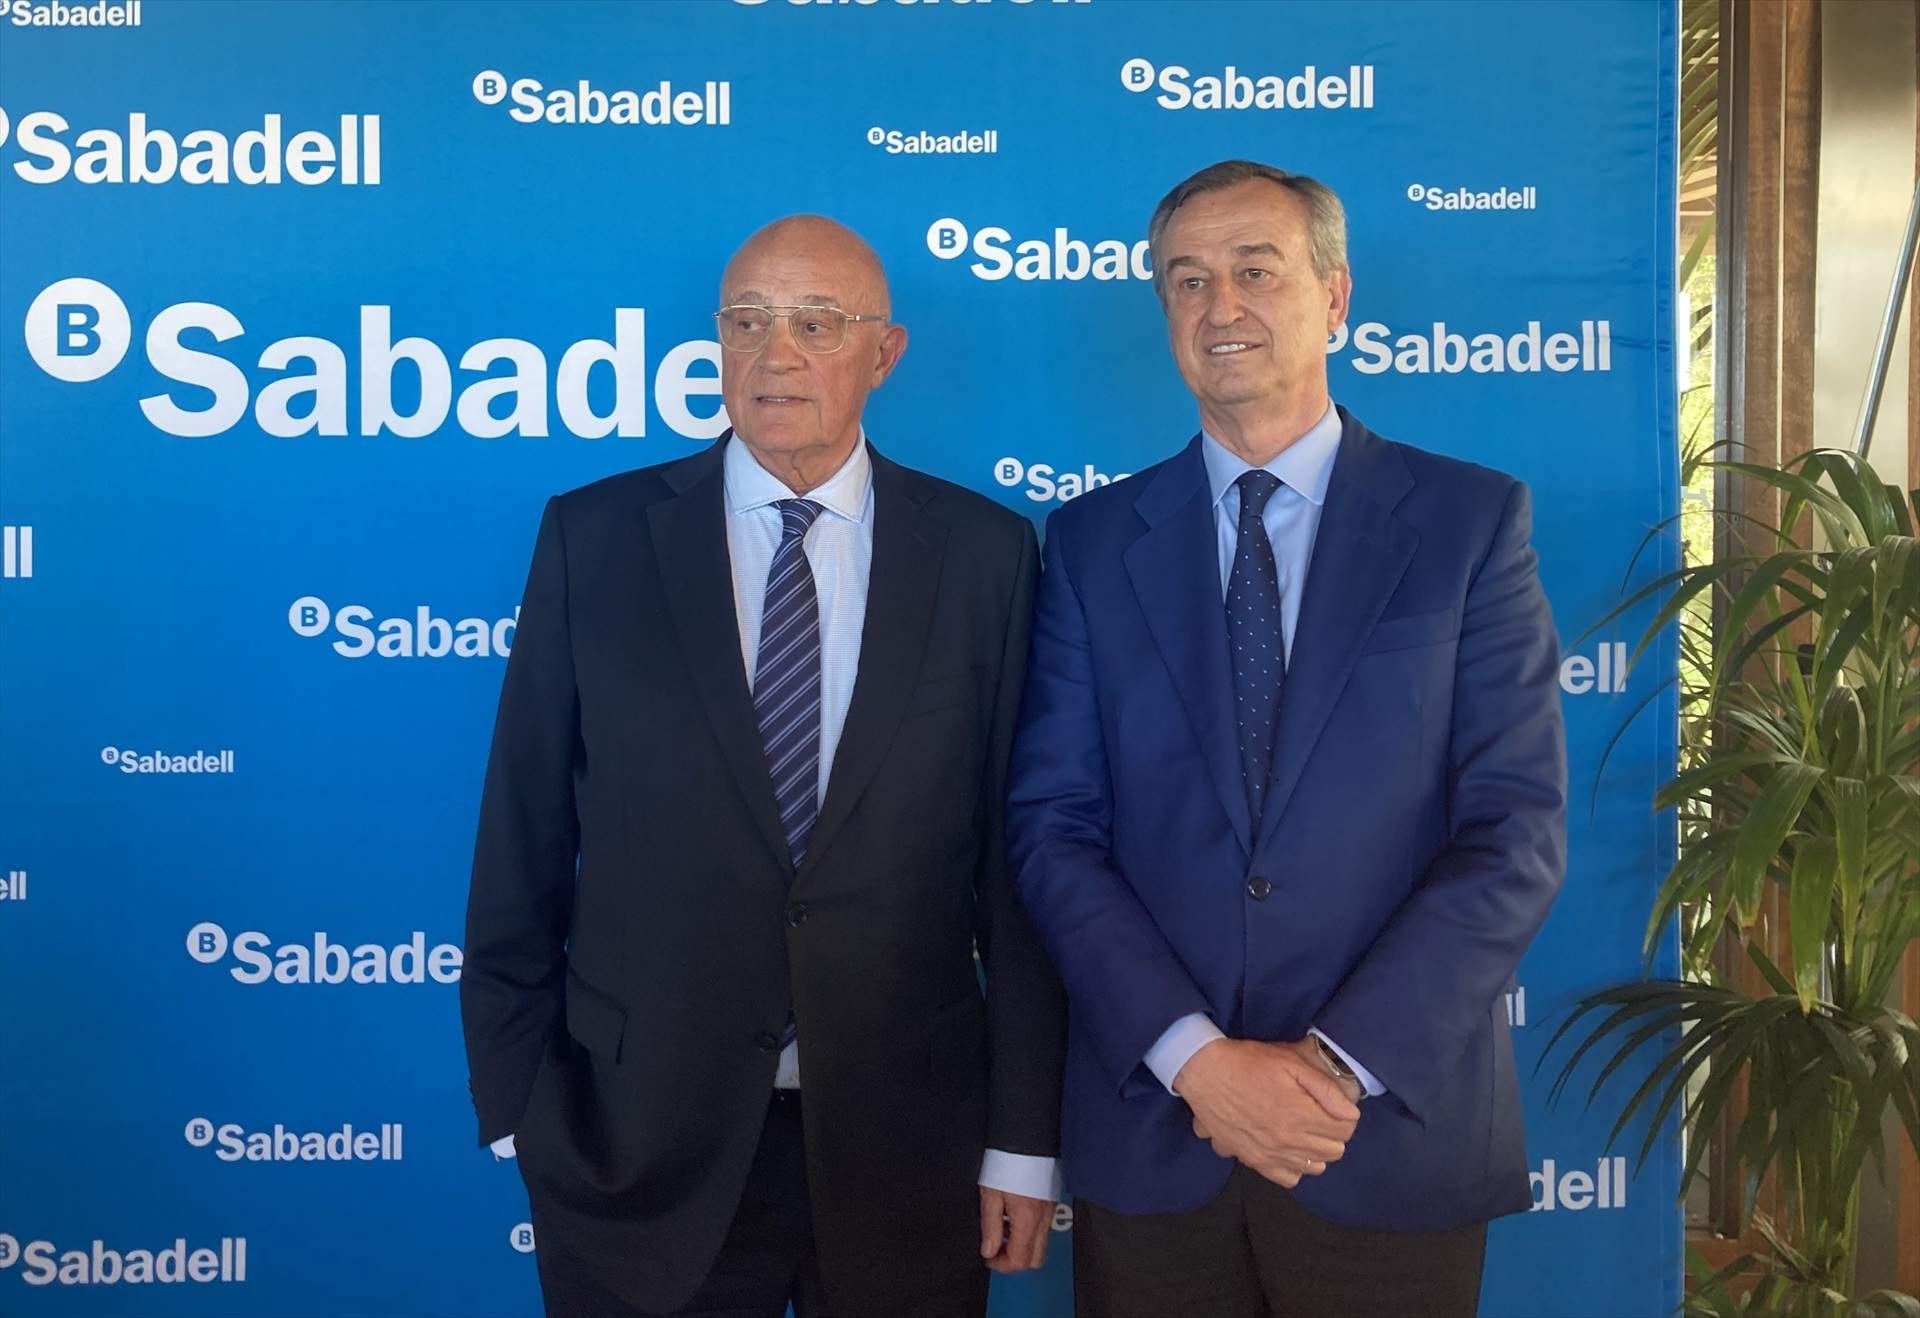 El Sabadell alerta que la opa del BBVA le expone a perder empleo y oportunidades de negocio